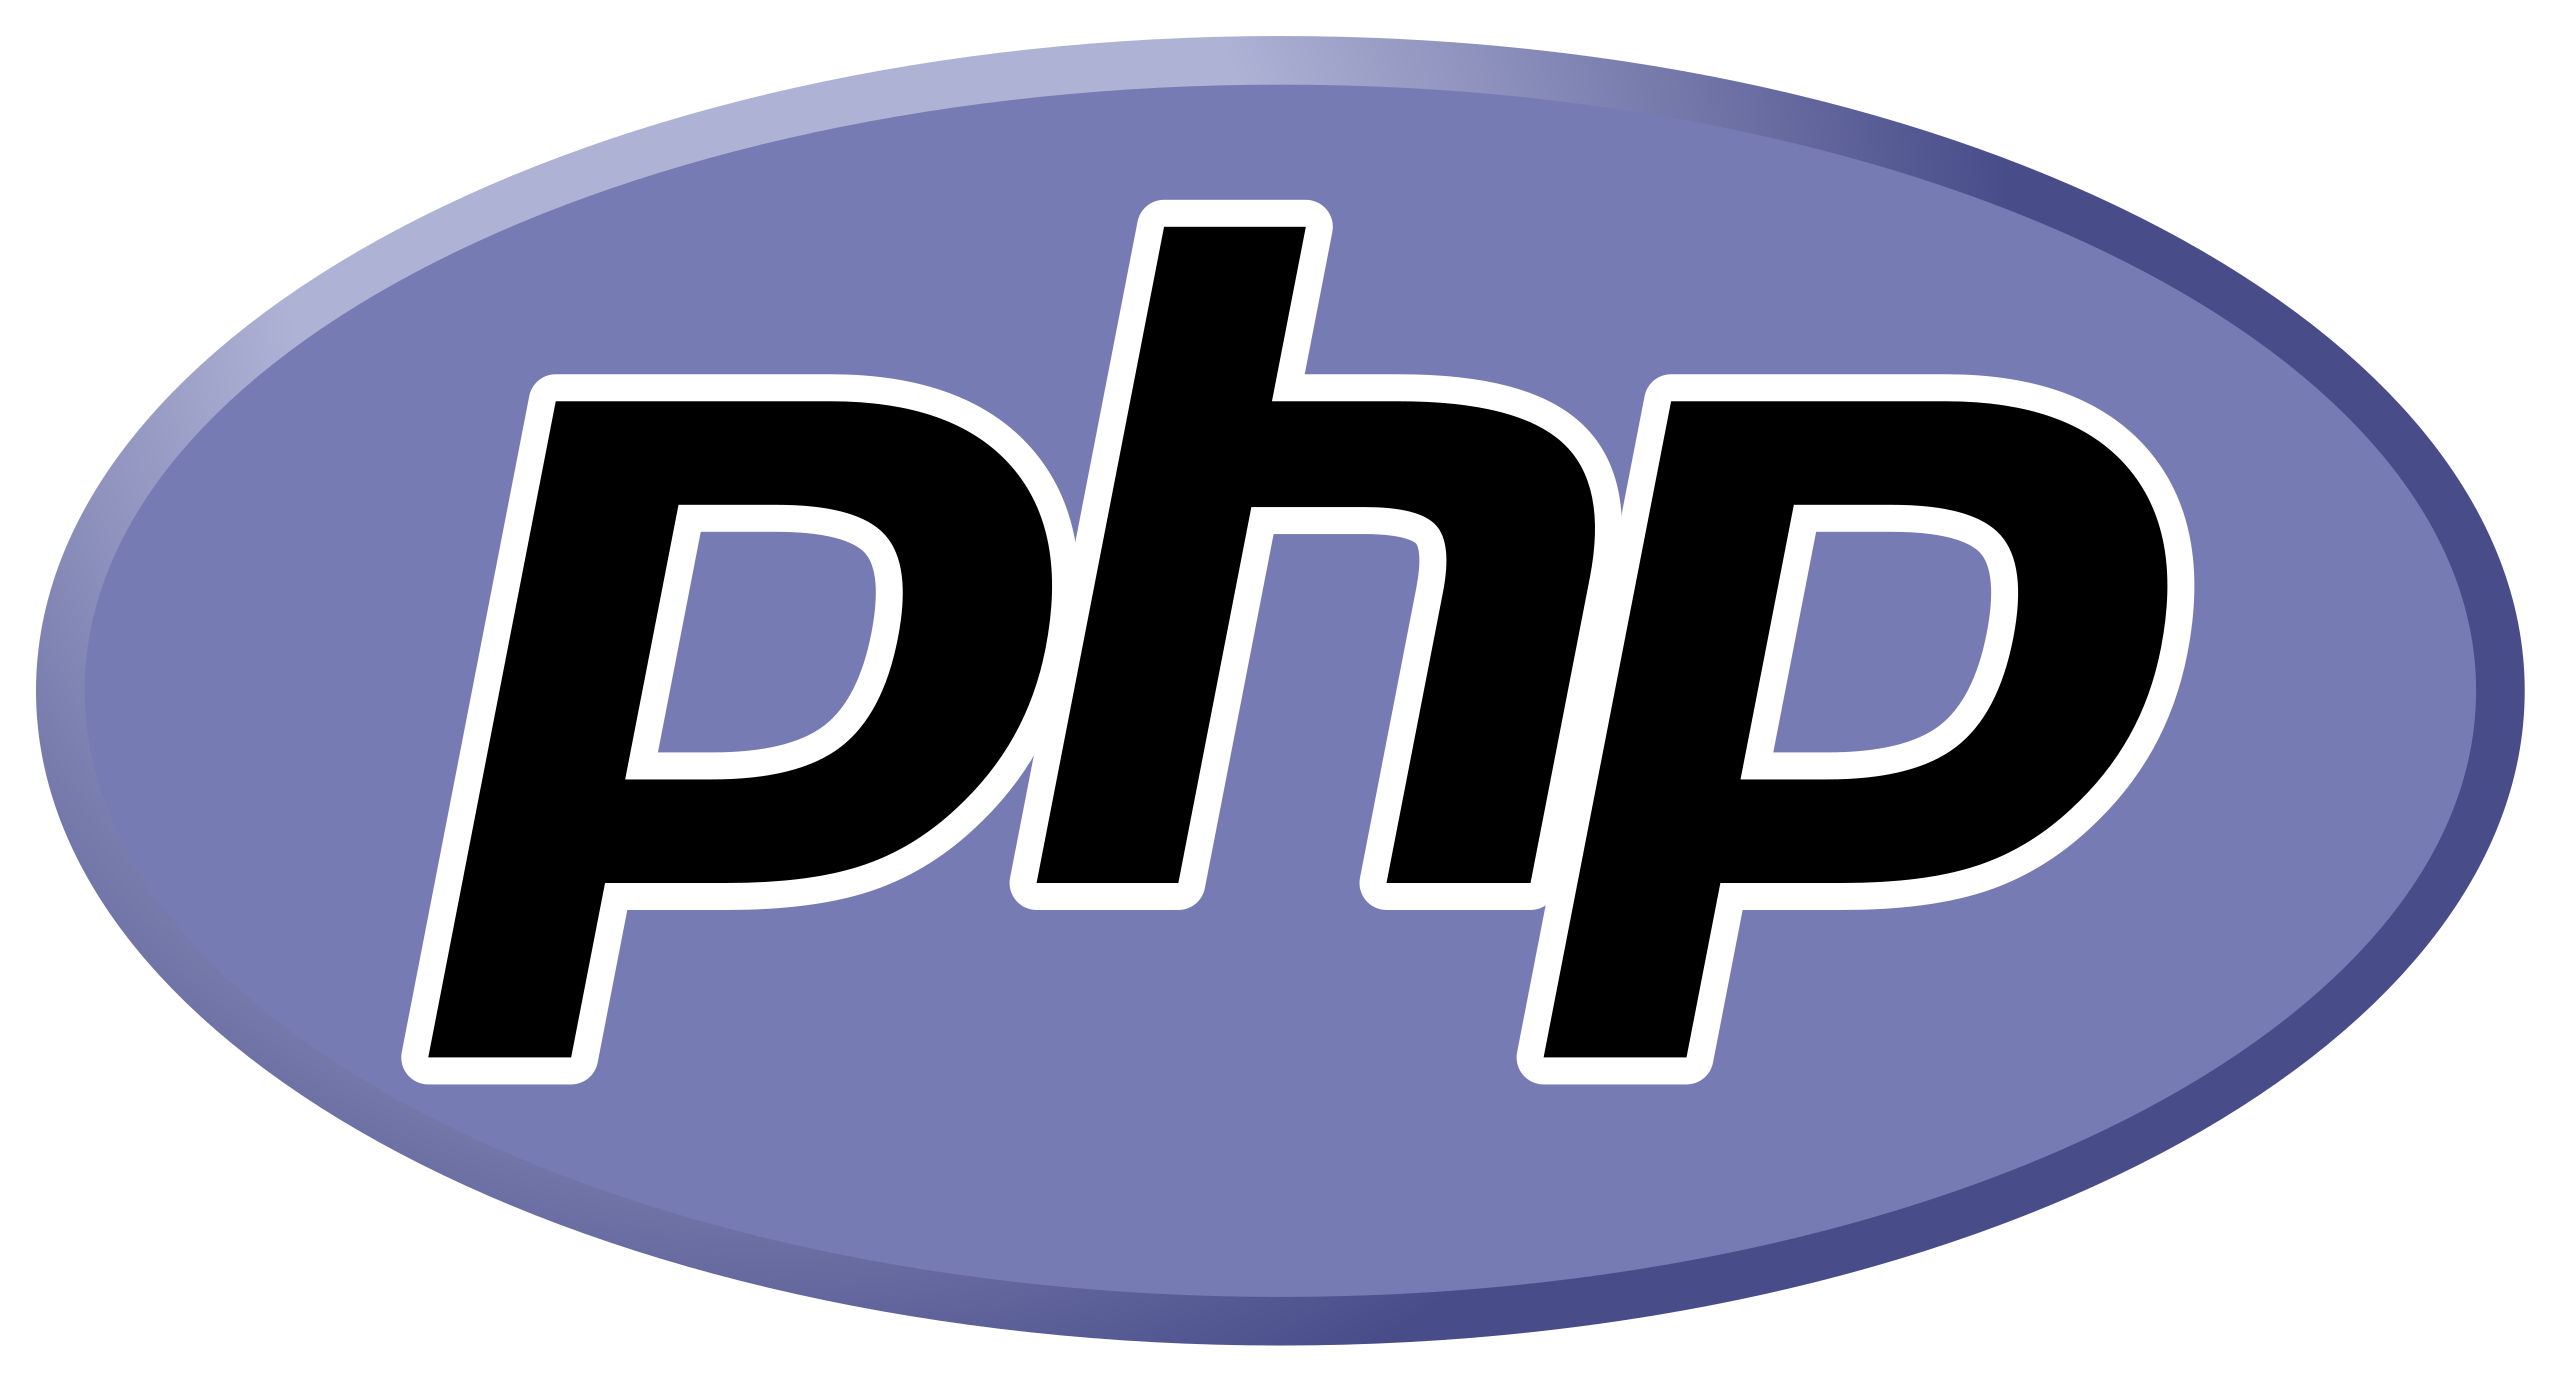 Mehr über den Artikel erfahren Willkommen zu unserem “Hello World” PHP-Tutorial!